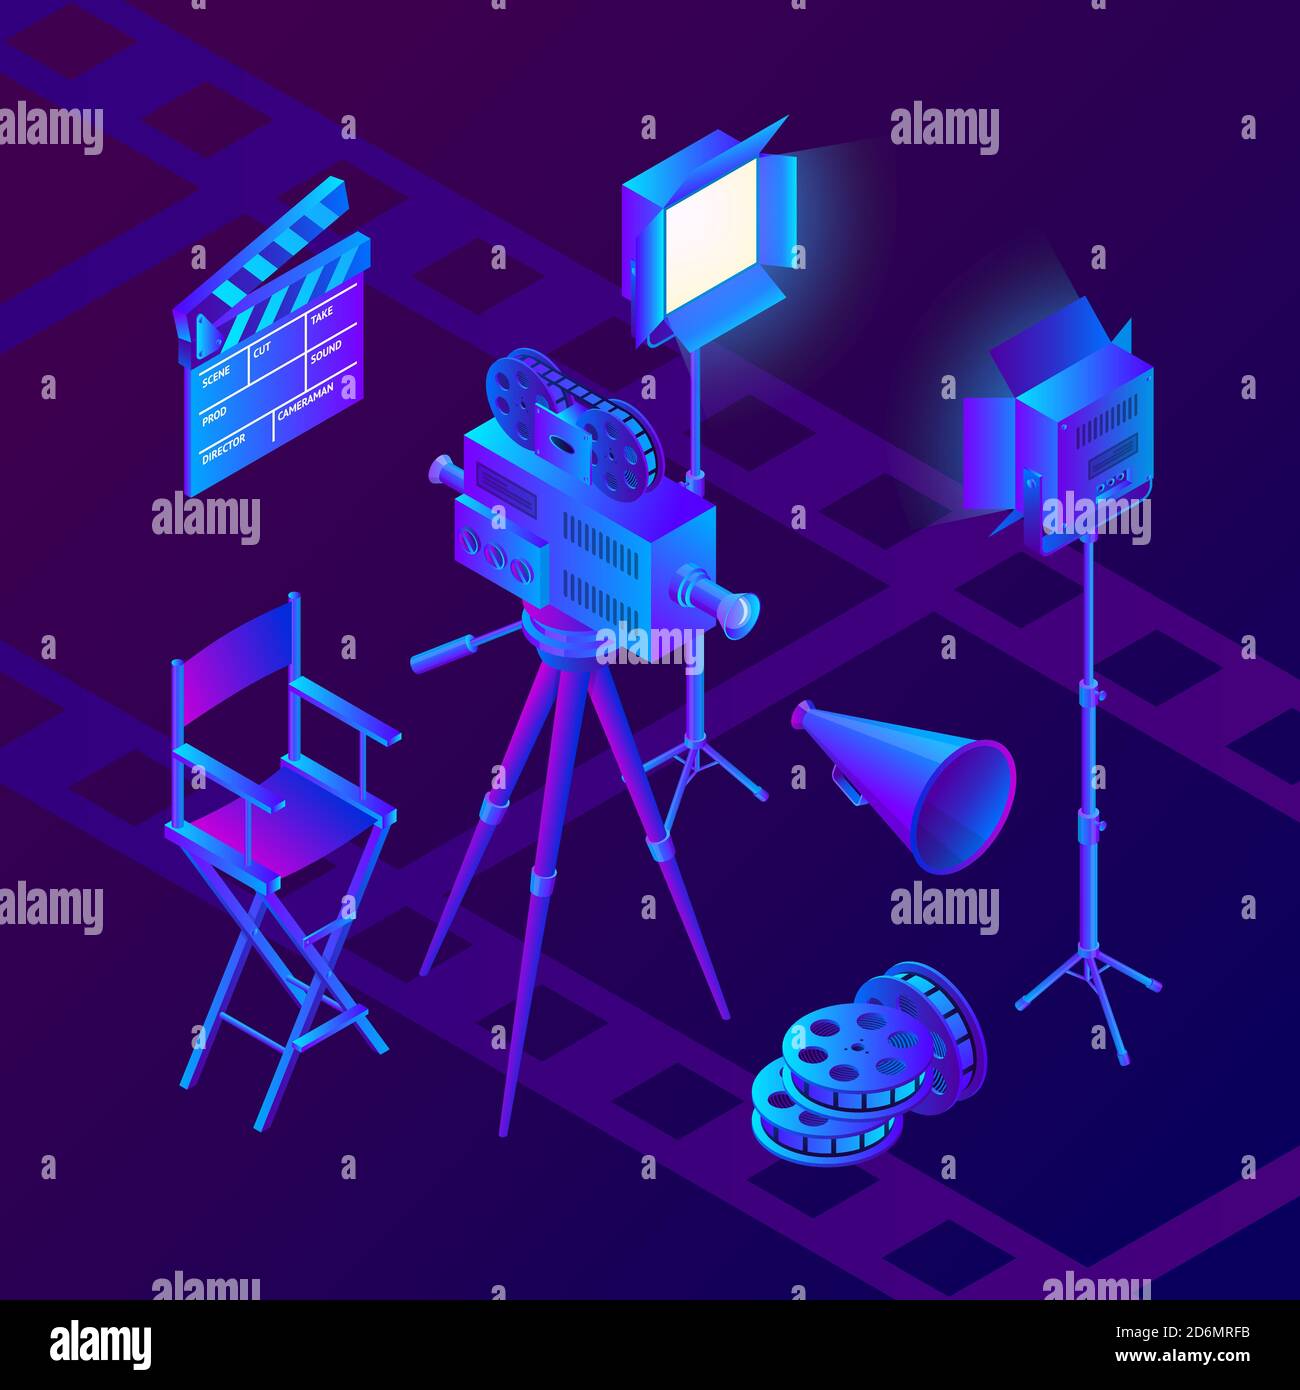 Produzione di video e cinema. Illustrazione dei gradienti neon isometrici vettoriali. Set di icone e elementi di design per le attrezzature degli studi cinematografici. Illustrazione Vettoriale